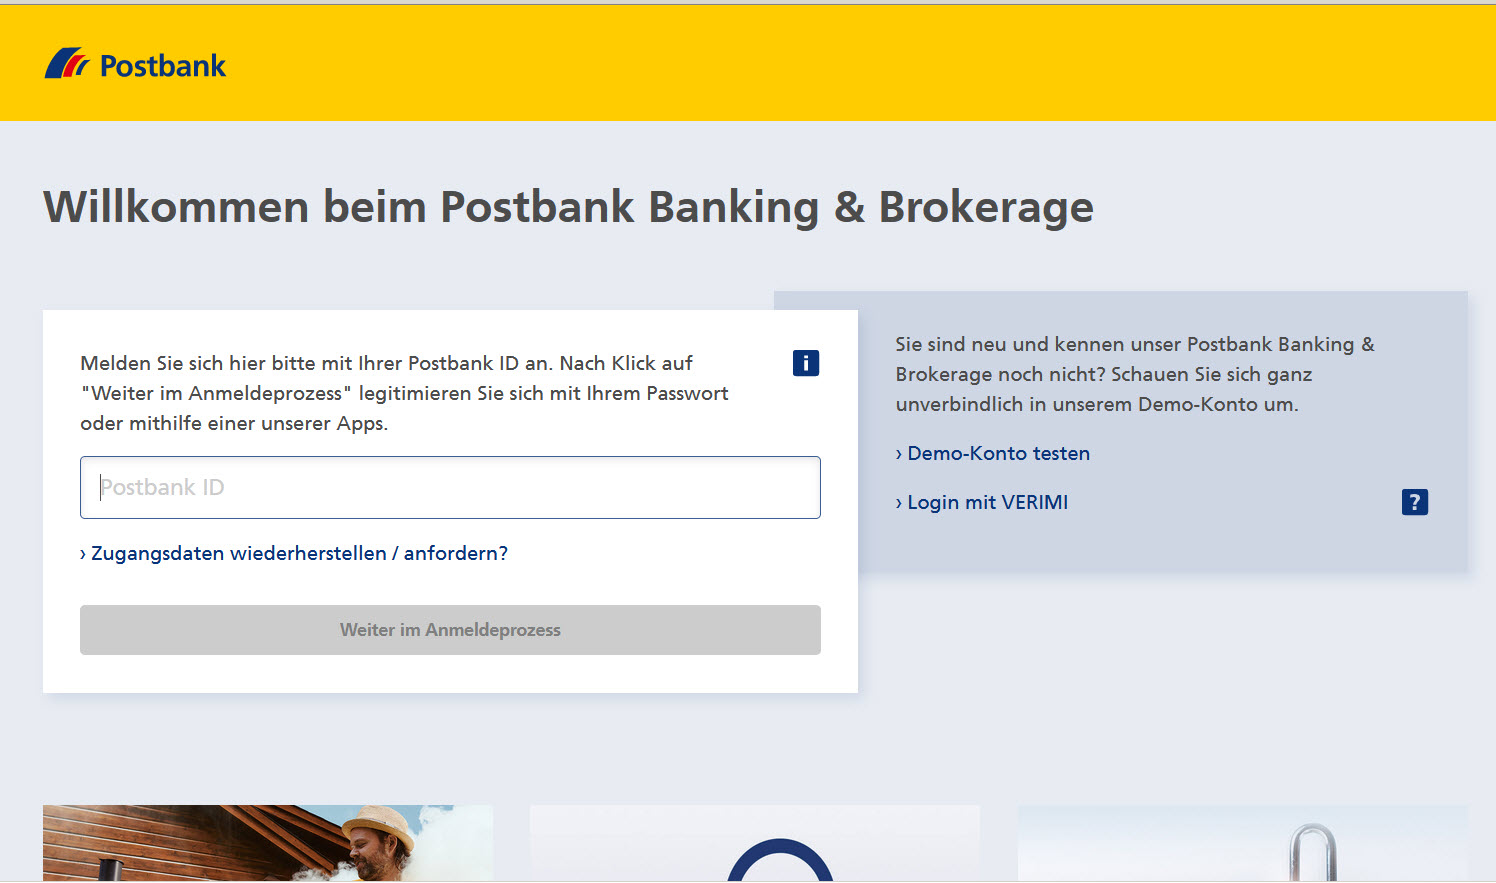 ➤ Deutsche Postbank AG 80335 München-Ludwigsvorstadt Adresse | Telefon |  Kontakt